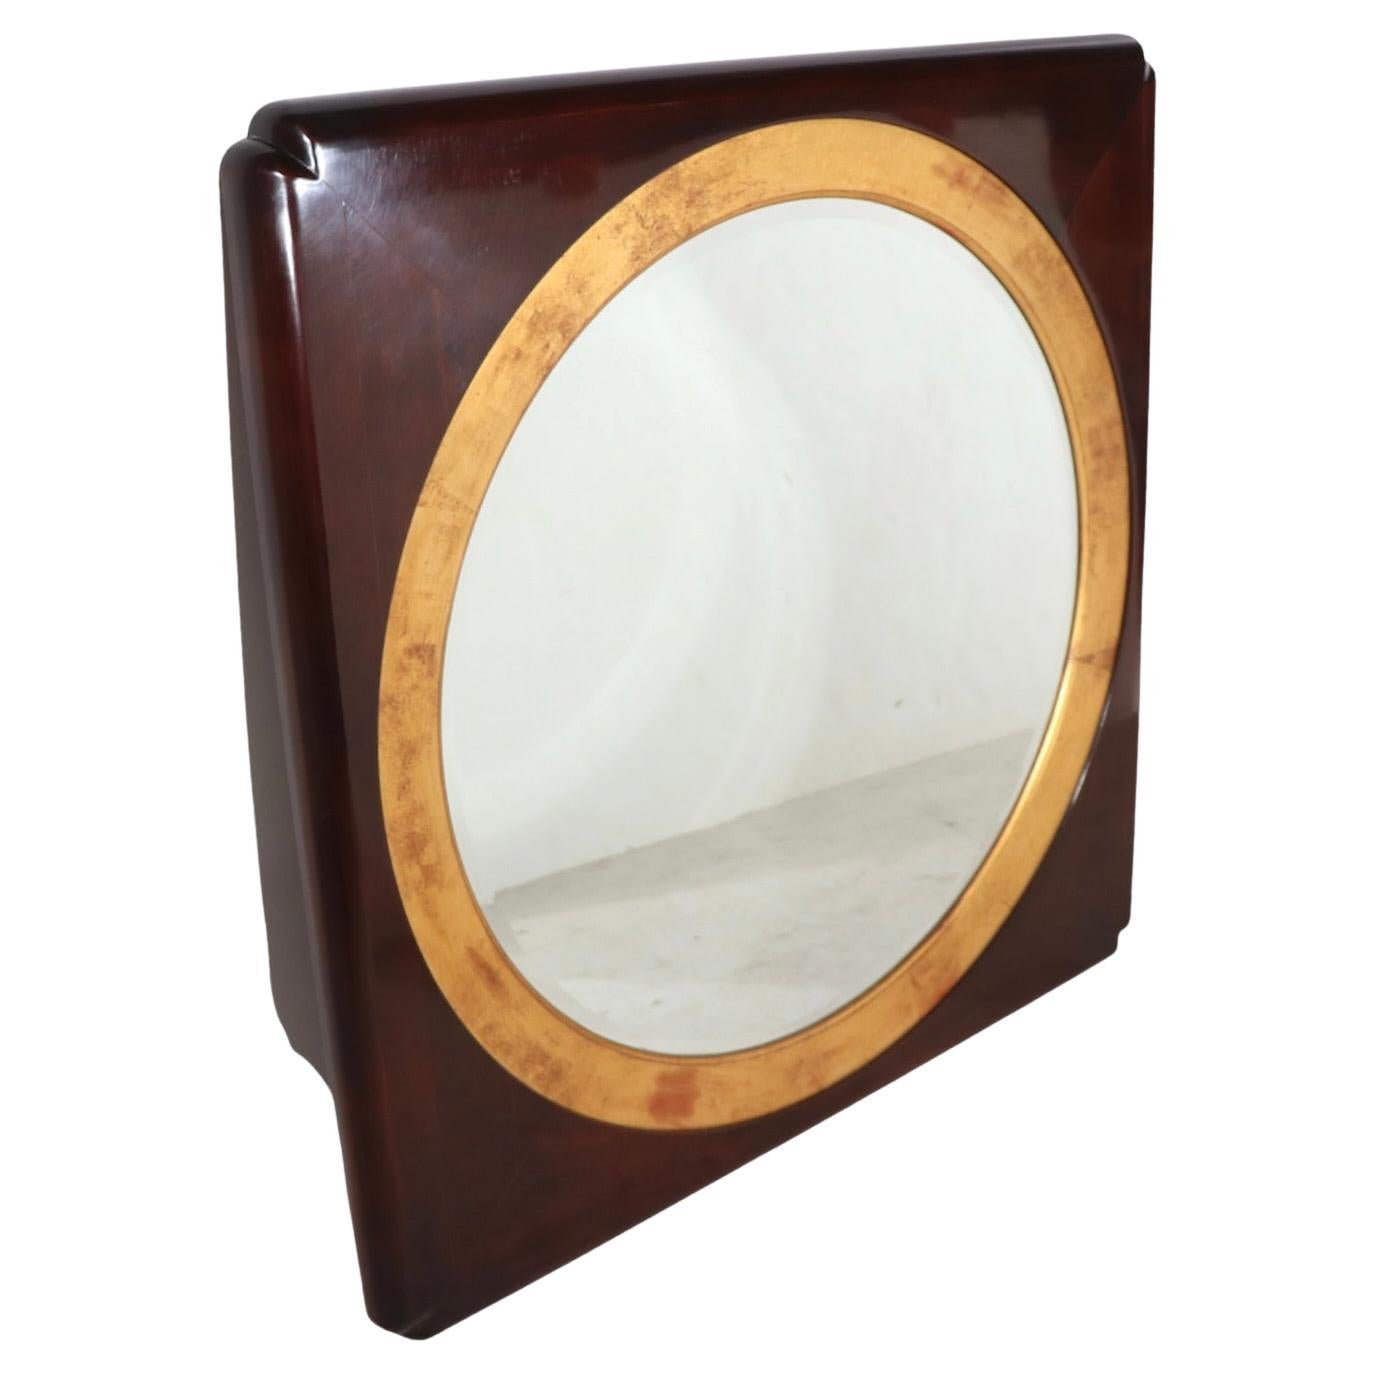 Spektakulärer Porzellanspiegel von hochwertigem Möbelhersteller Henredon, ca. 1970/1980er Jahre. Der Spiegel hat eine kreisförmige Mitte (32 Zoll Durchmesser), die von einer vergoldeten Verzierung umgeben ist, in einen Rahmen aus massivem dunklem